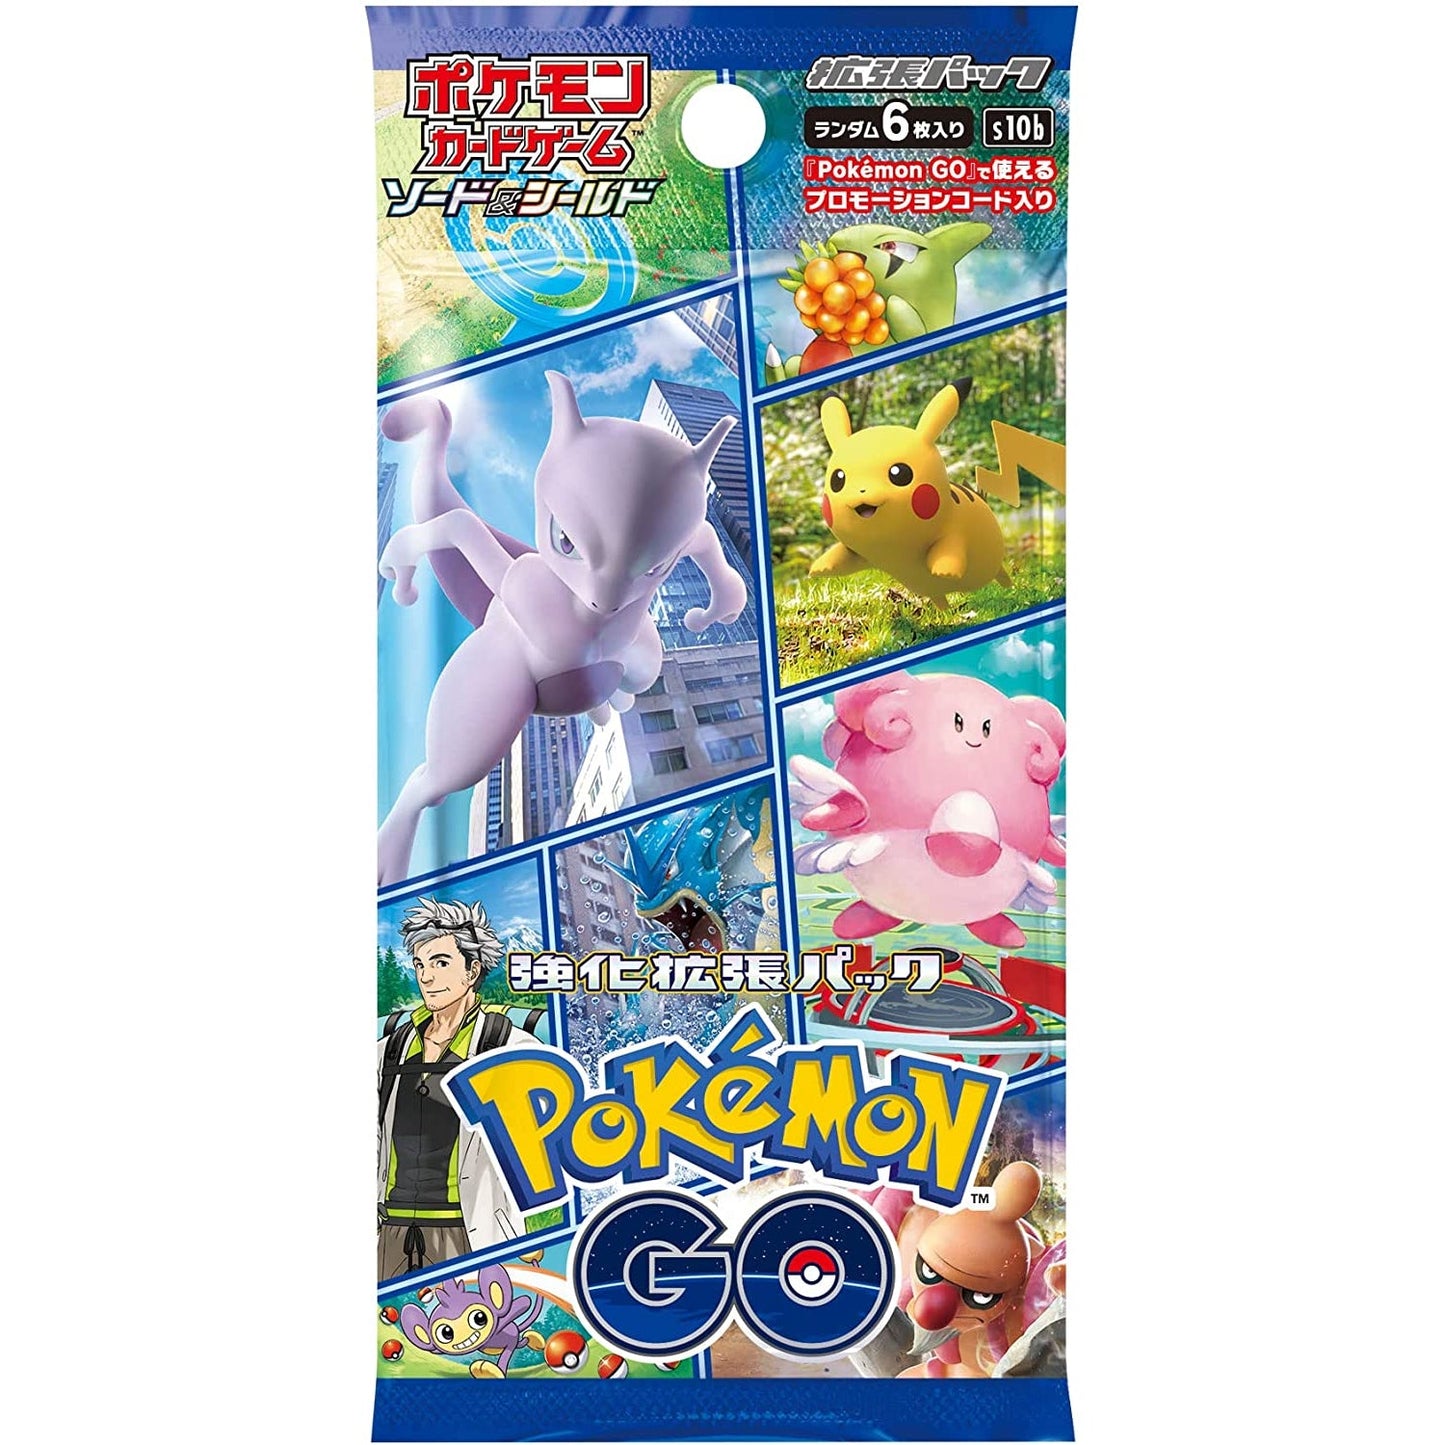 Pokémon Card Booster Box Pokémon GO s10b Japonês com pacote promocional